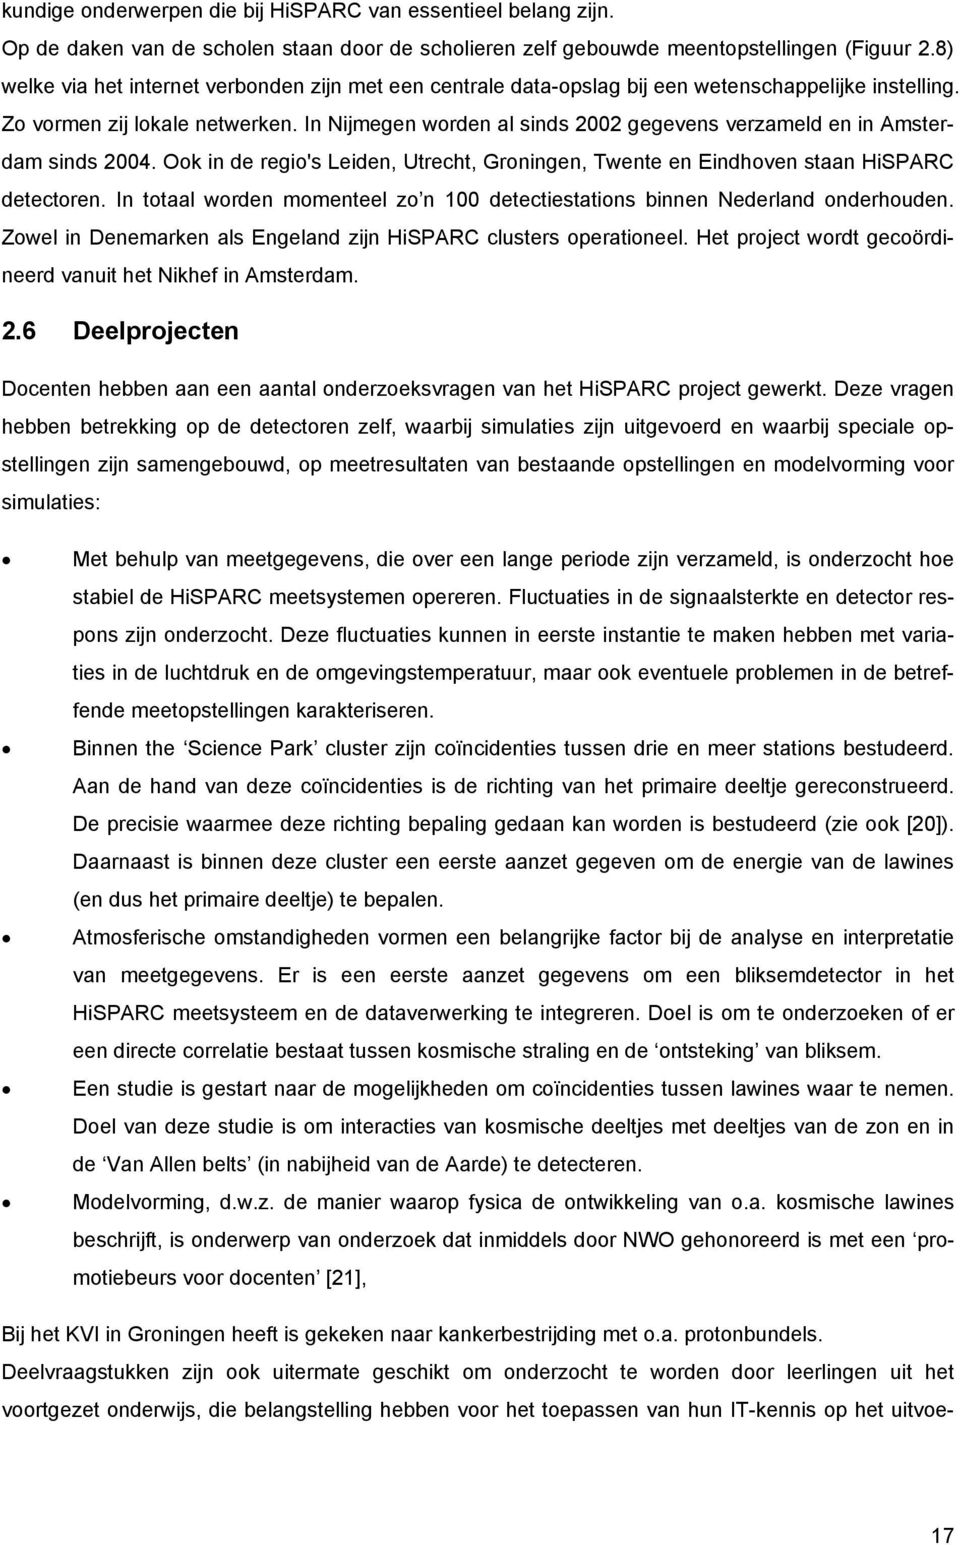 In Nijmegen worden al sinds 2002 gegevens verzameld en in Amsterdam sinds 2004. Ook in de regio's Leiden, Utrecht, Groningen, Twente en Eindhoven staan HiSPARC detectoren.